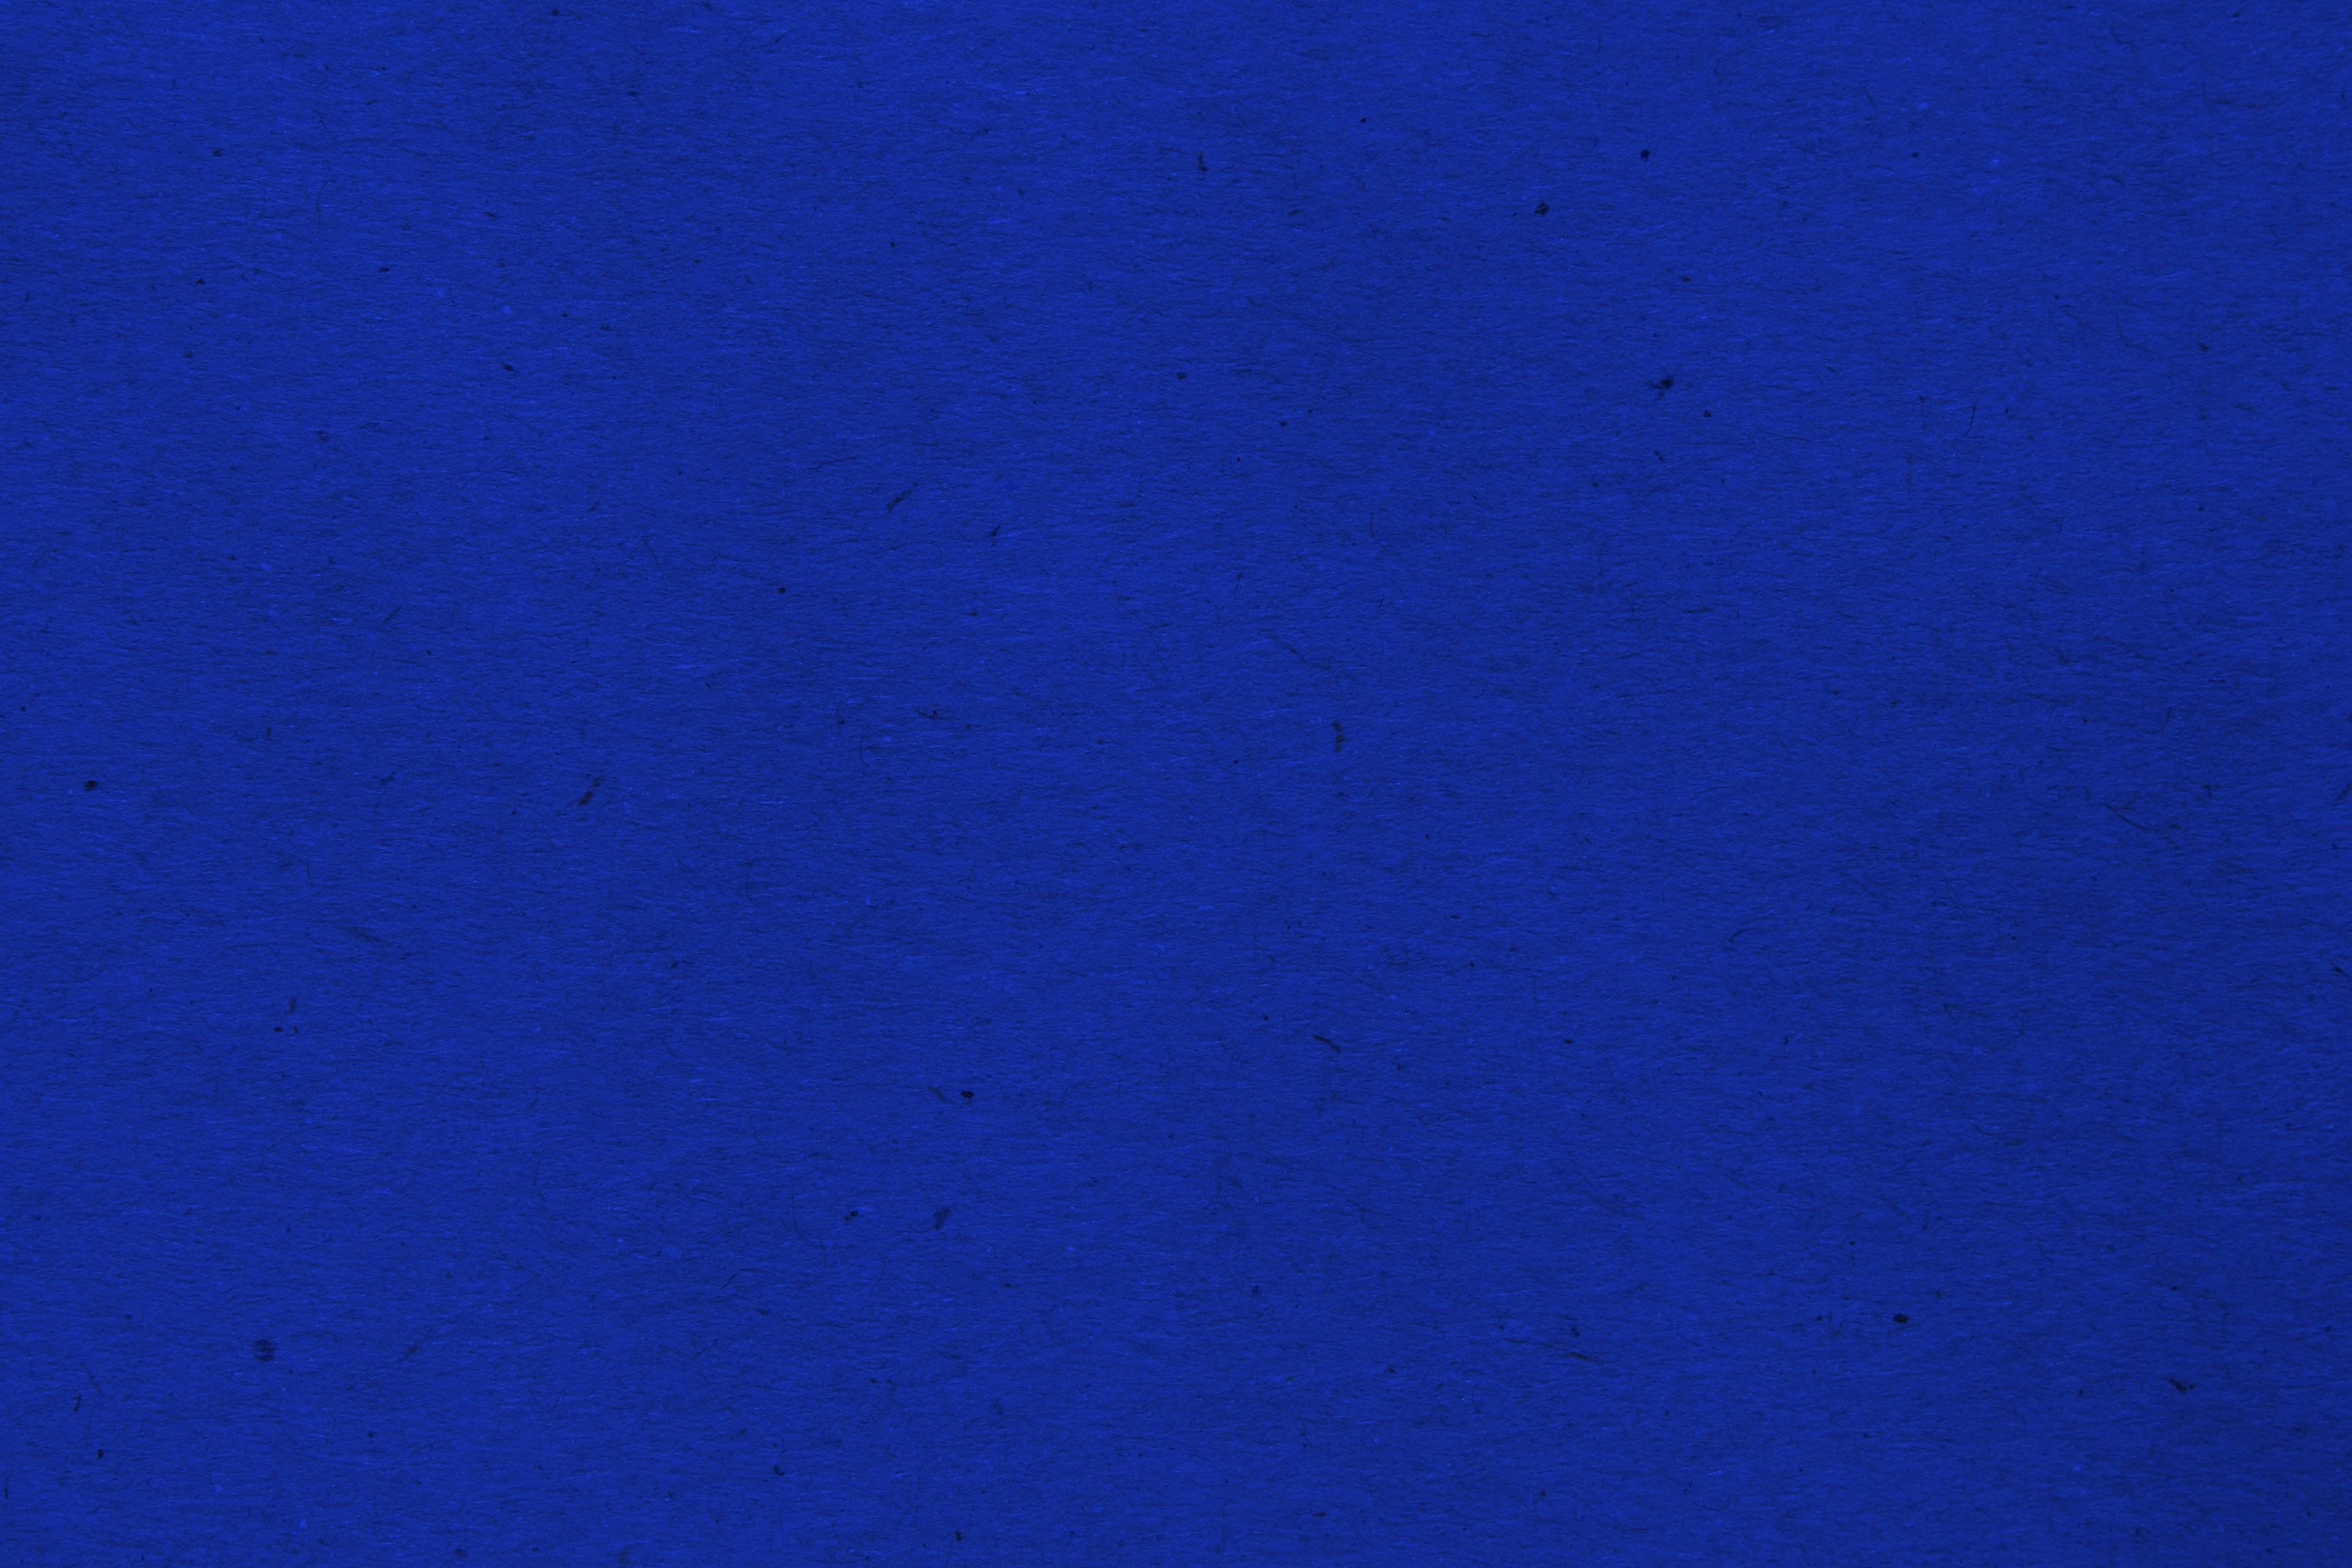 49+] Royal Blue Wallpapers - WallpaperSafari